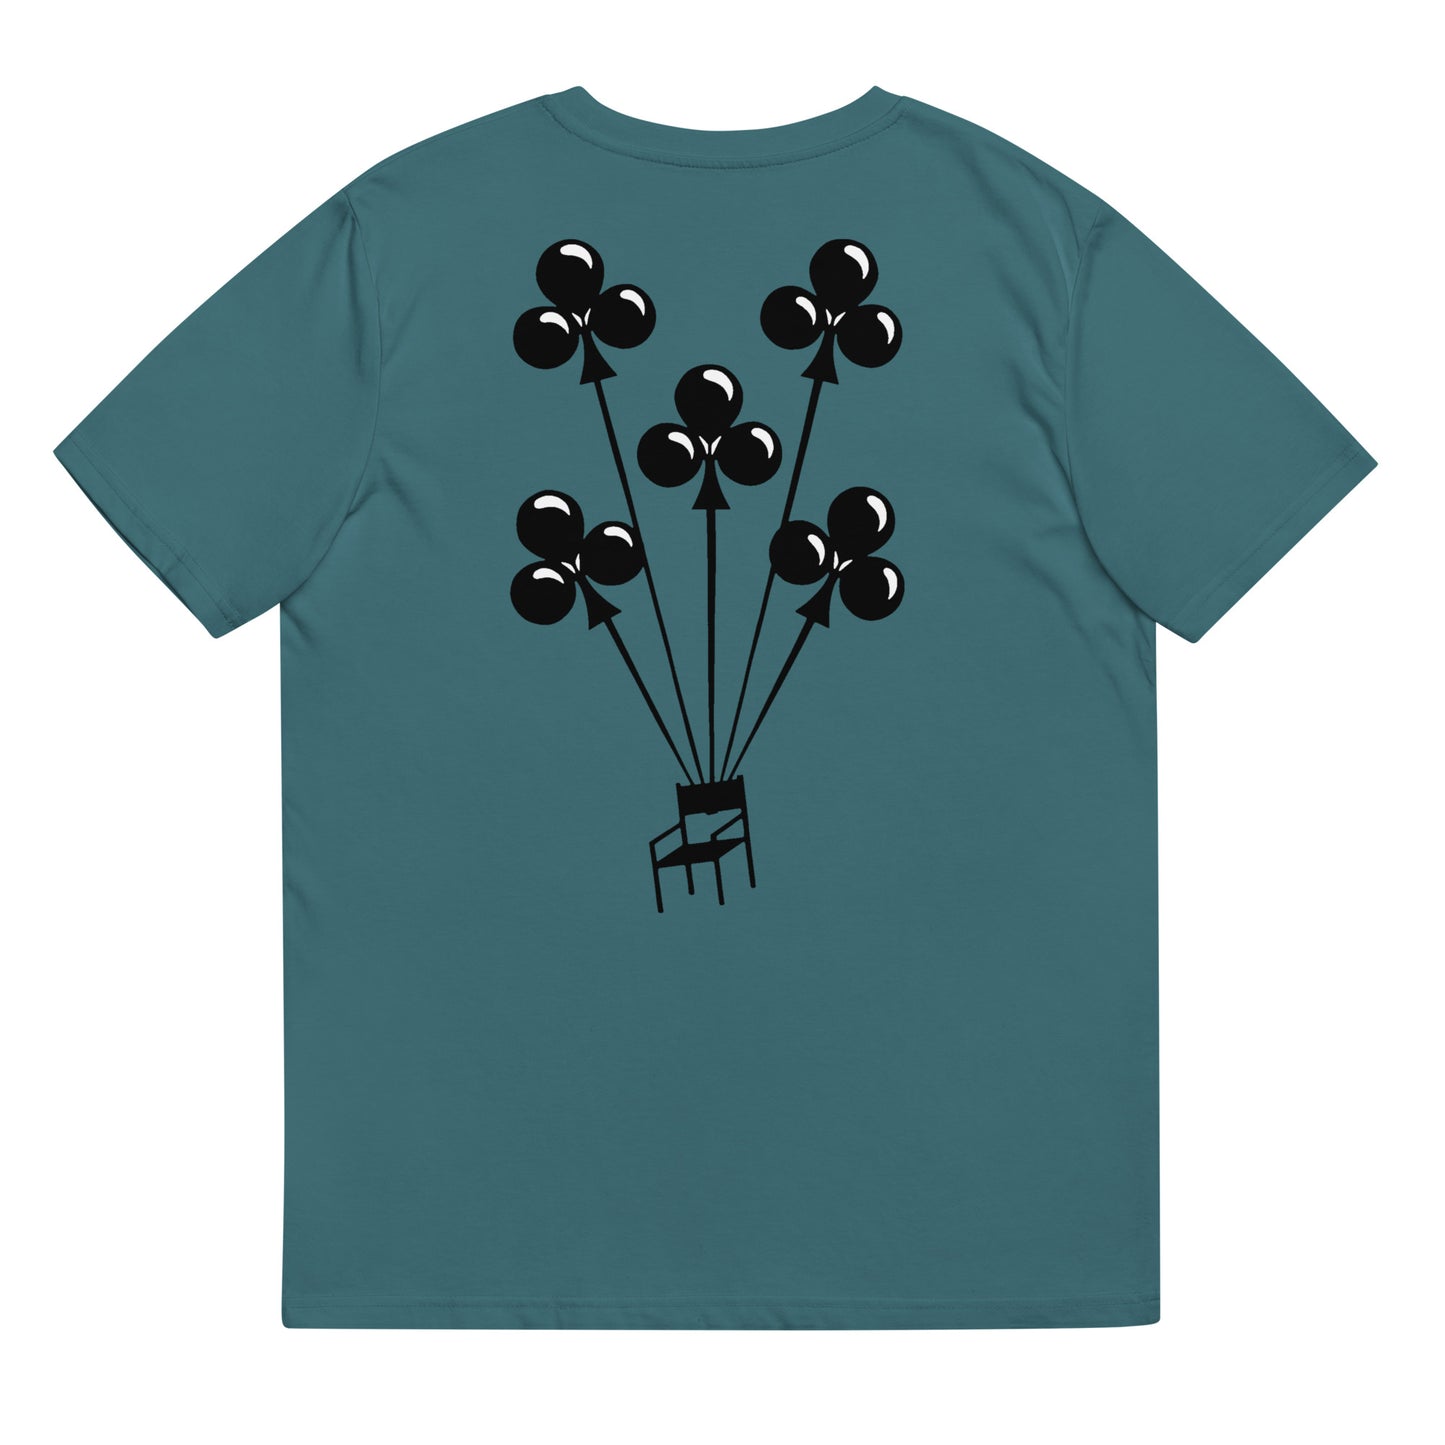 Assi 5 balloons unisex t-shirt